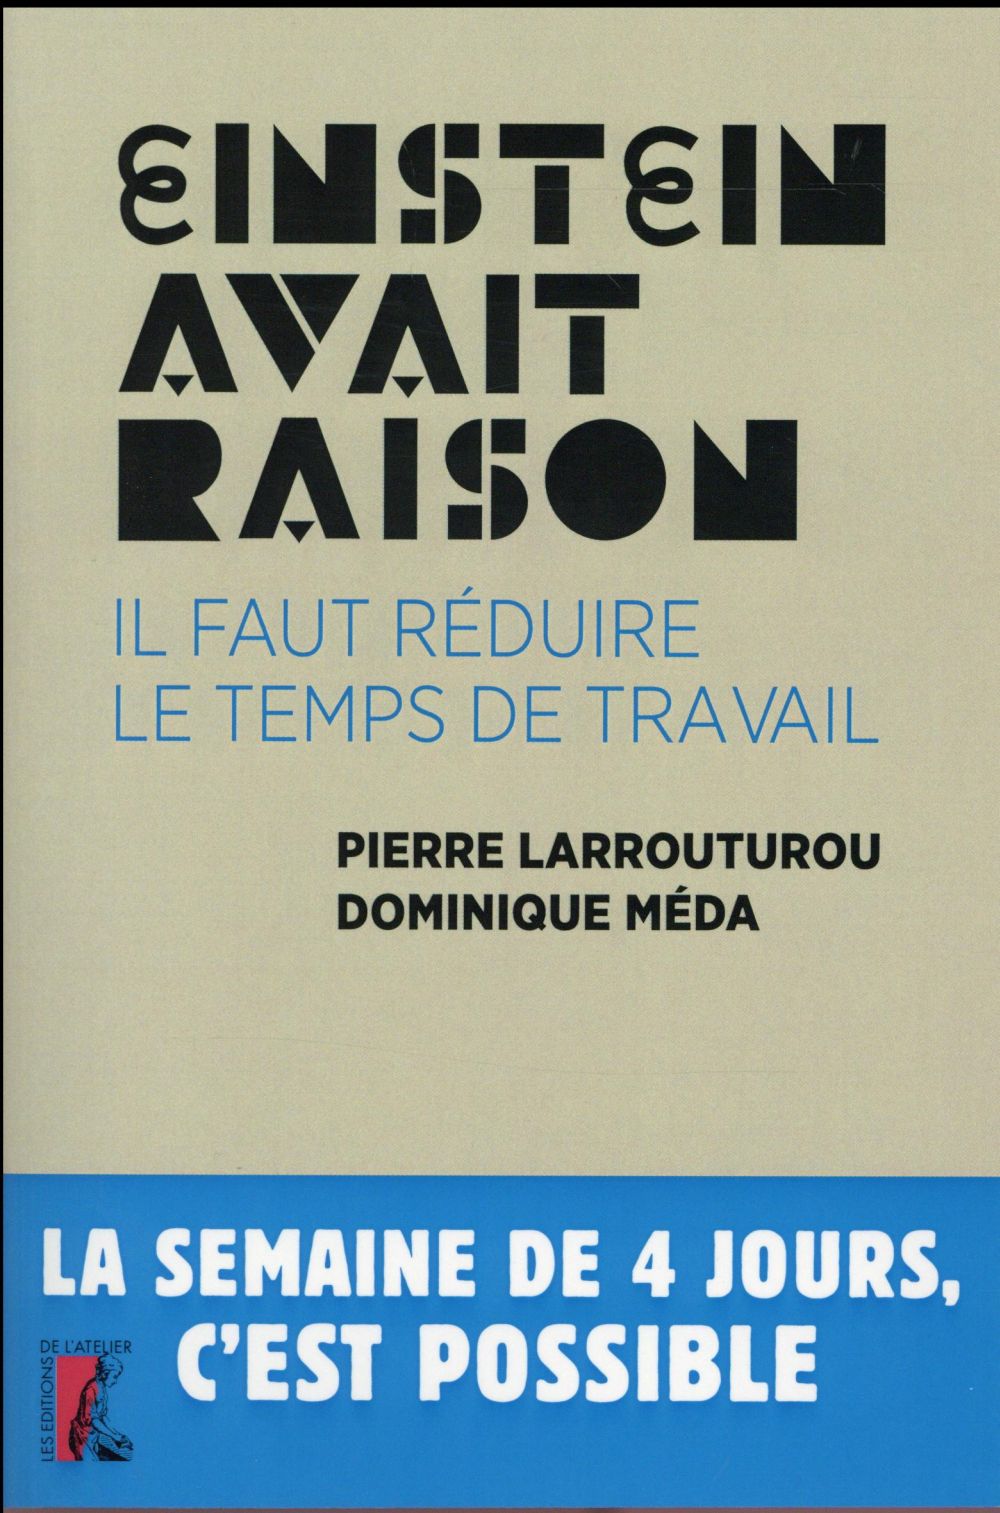 Couverture du livre EINSTEIN AVAIT RAISON IL FAUT REDUIRE LE TEMPS DE TRAVAIL